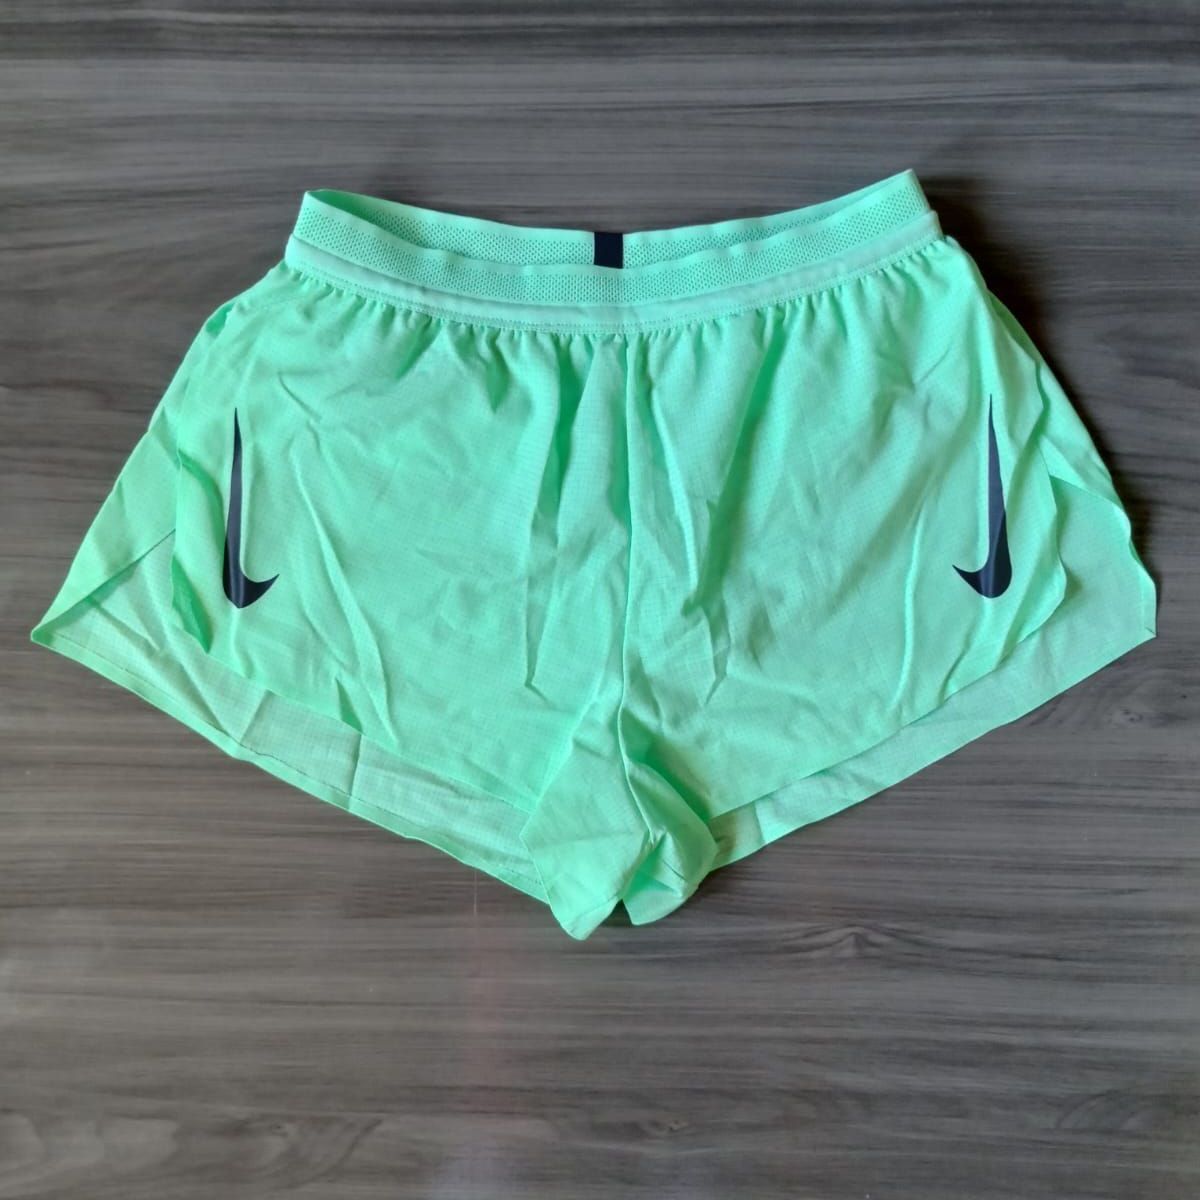 Short Nike Aeroswift Running, Shorts Feminino Nike Nunca Usado 78010699